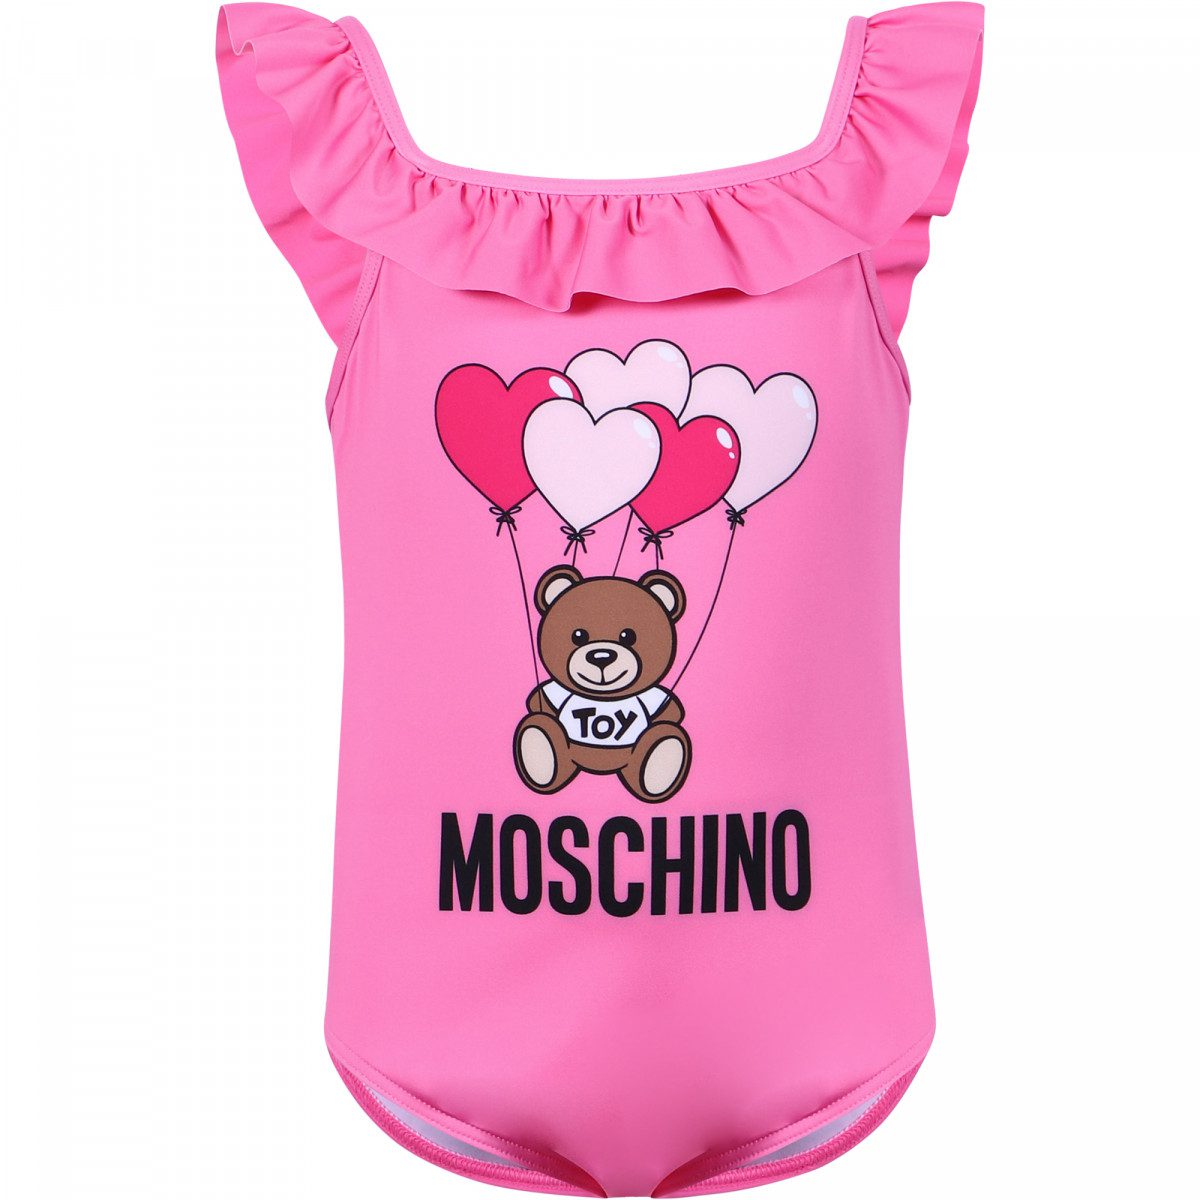 moschino baby swimwear